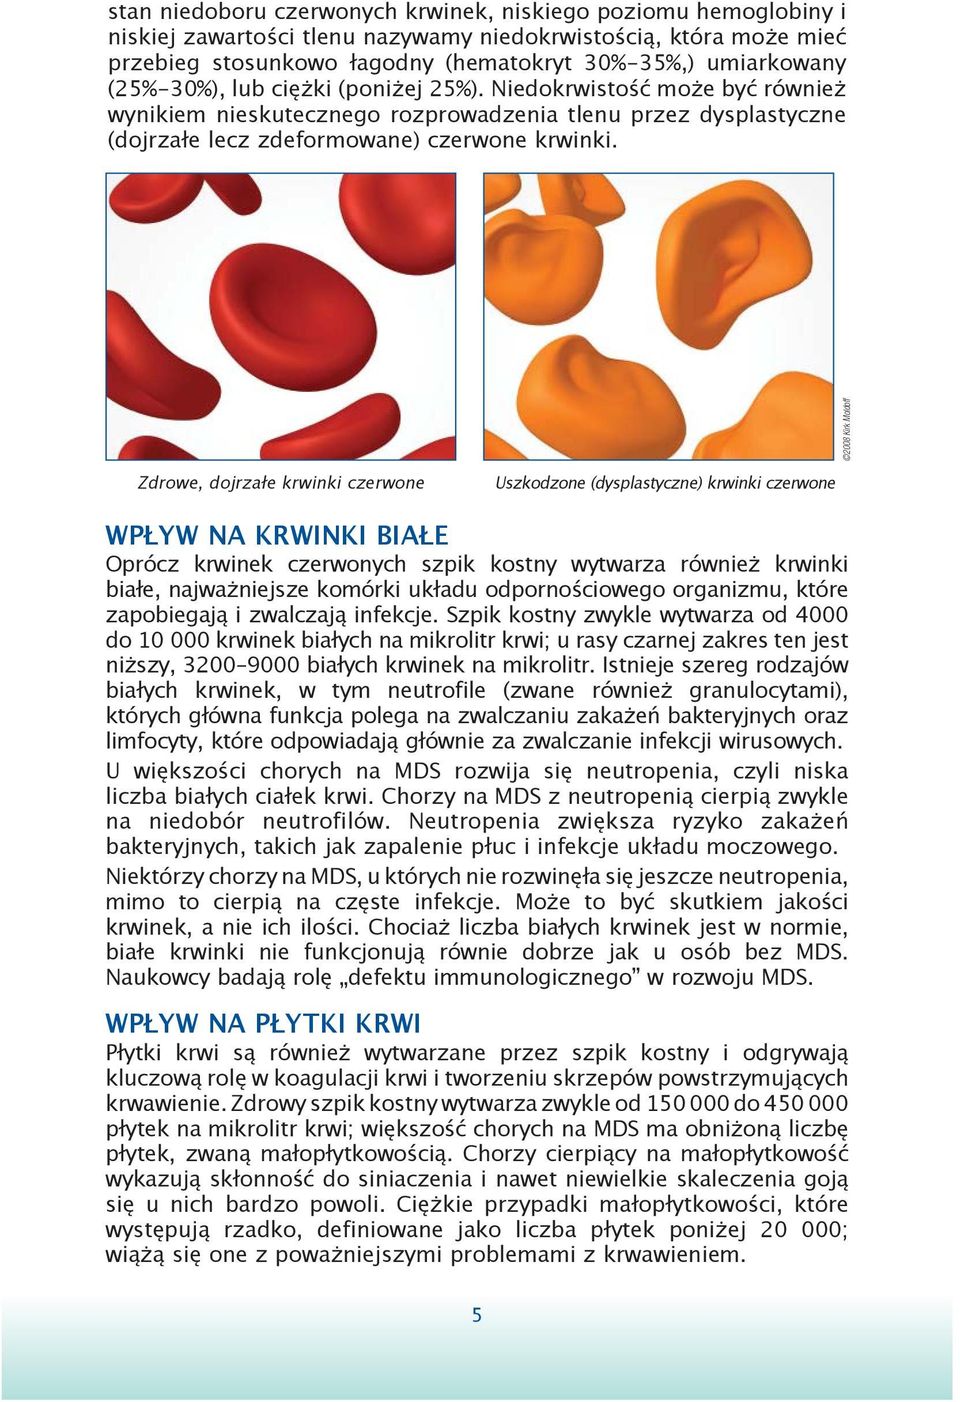 2008 Kirk Moldoff Zdrowe, dojrzałe krwinki czerwone Uszkodzone (dysplastyczne) krwinki czerwone WPŁYW NA KRWINKI BIAŁE Oprócz krwinek czerwonych szpik kostny wytwarza również krwinki białe,